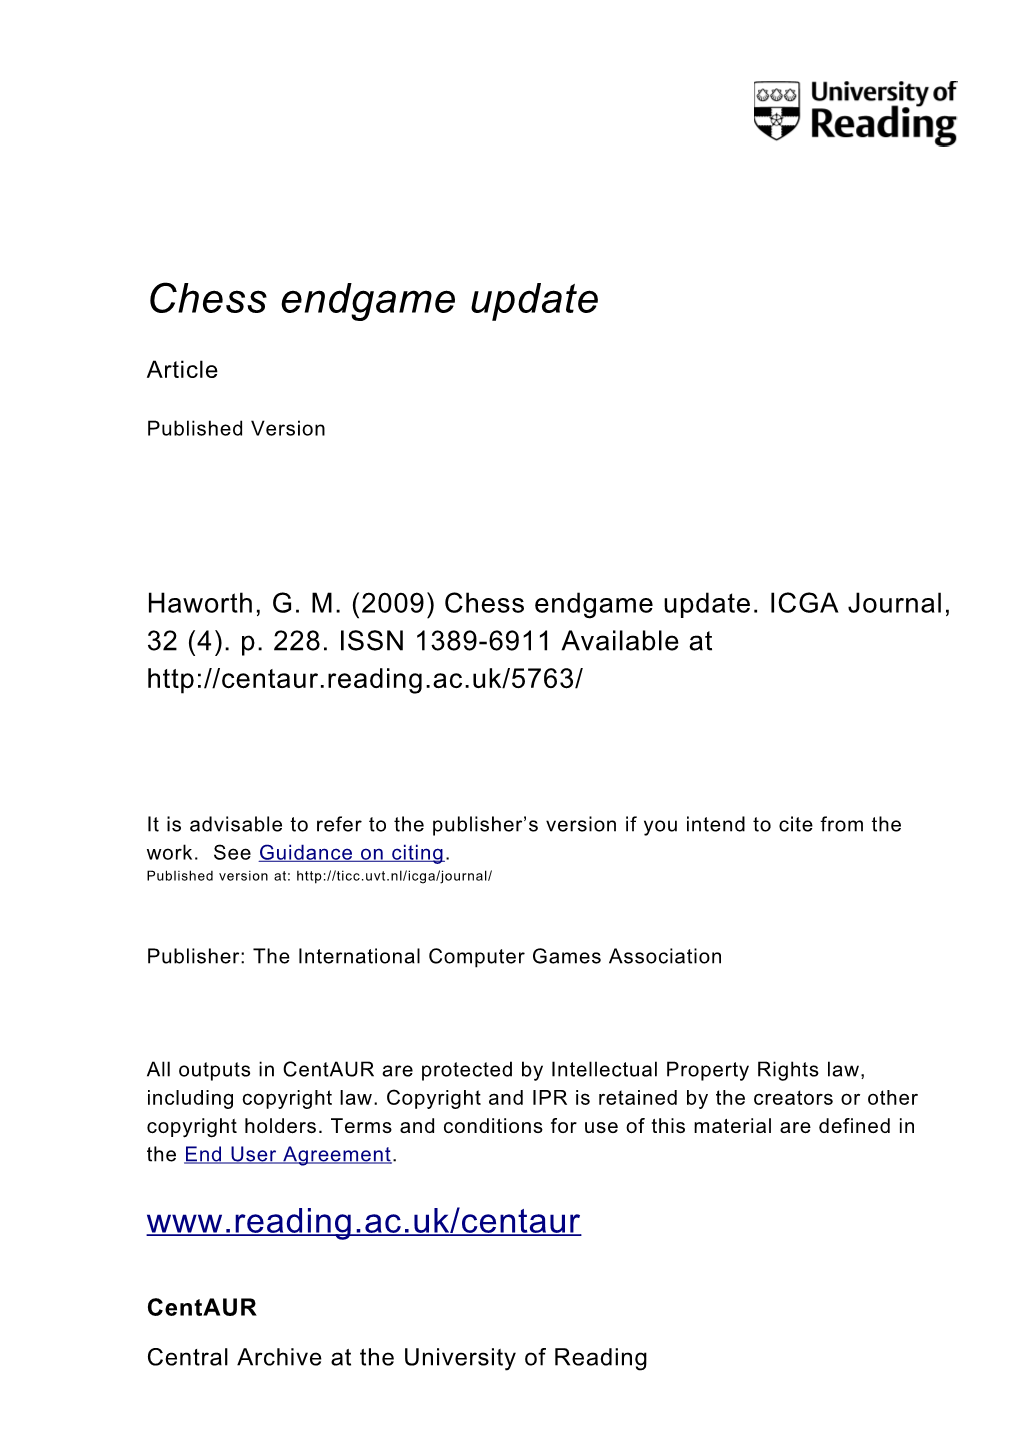 Chess Endgame Update